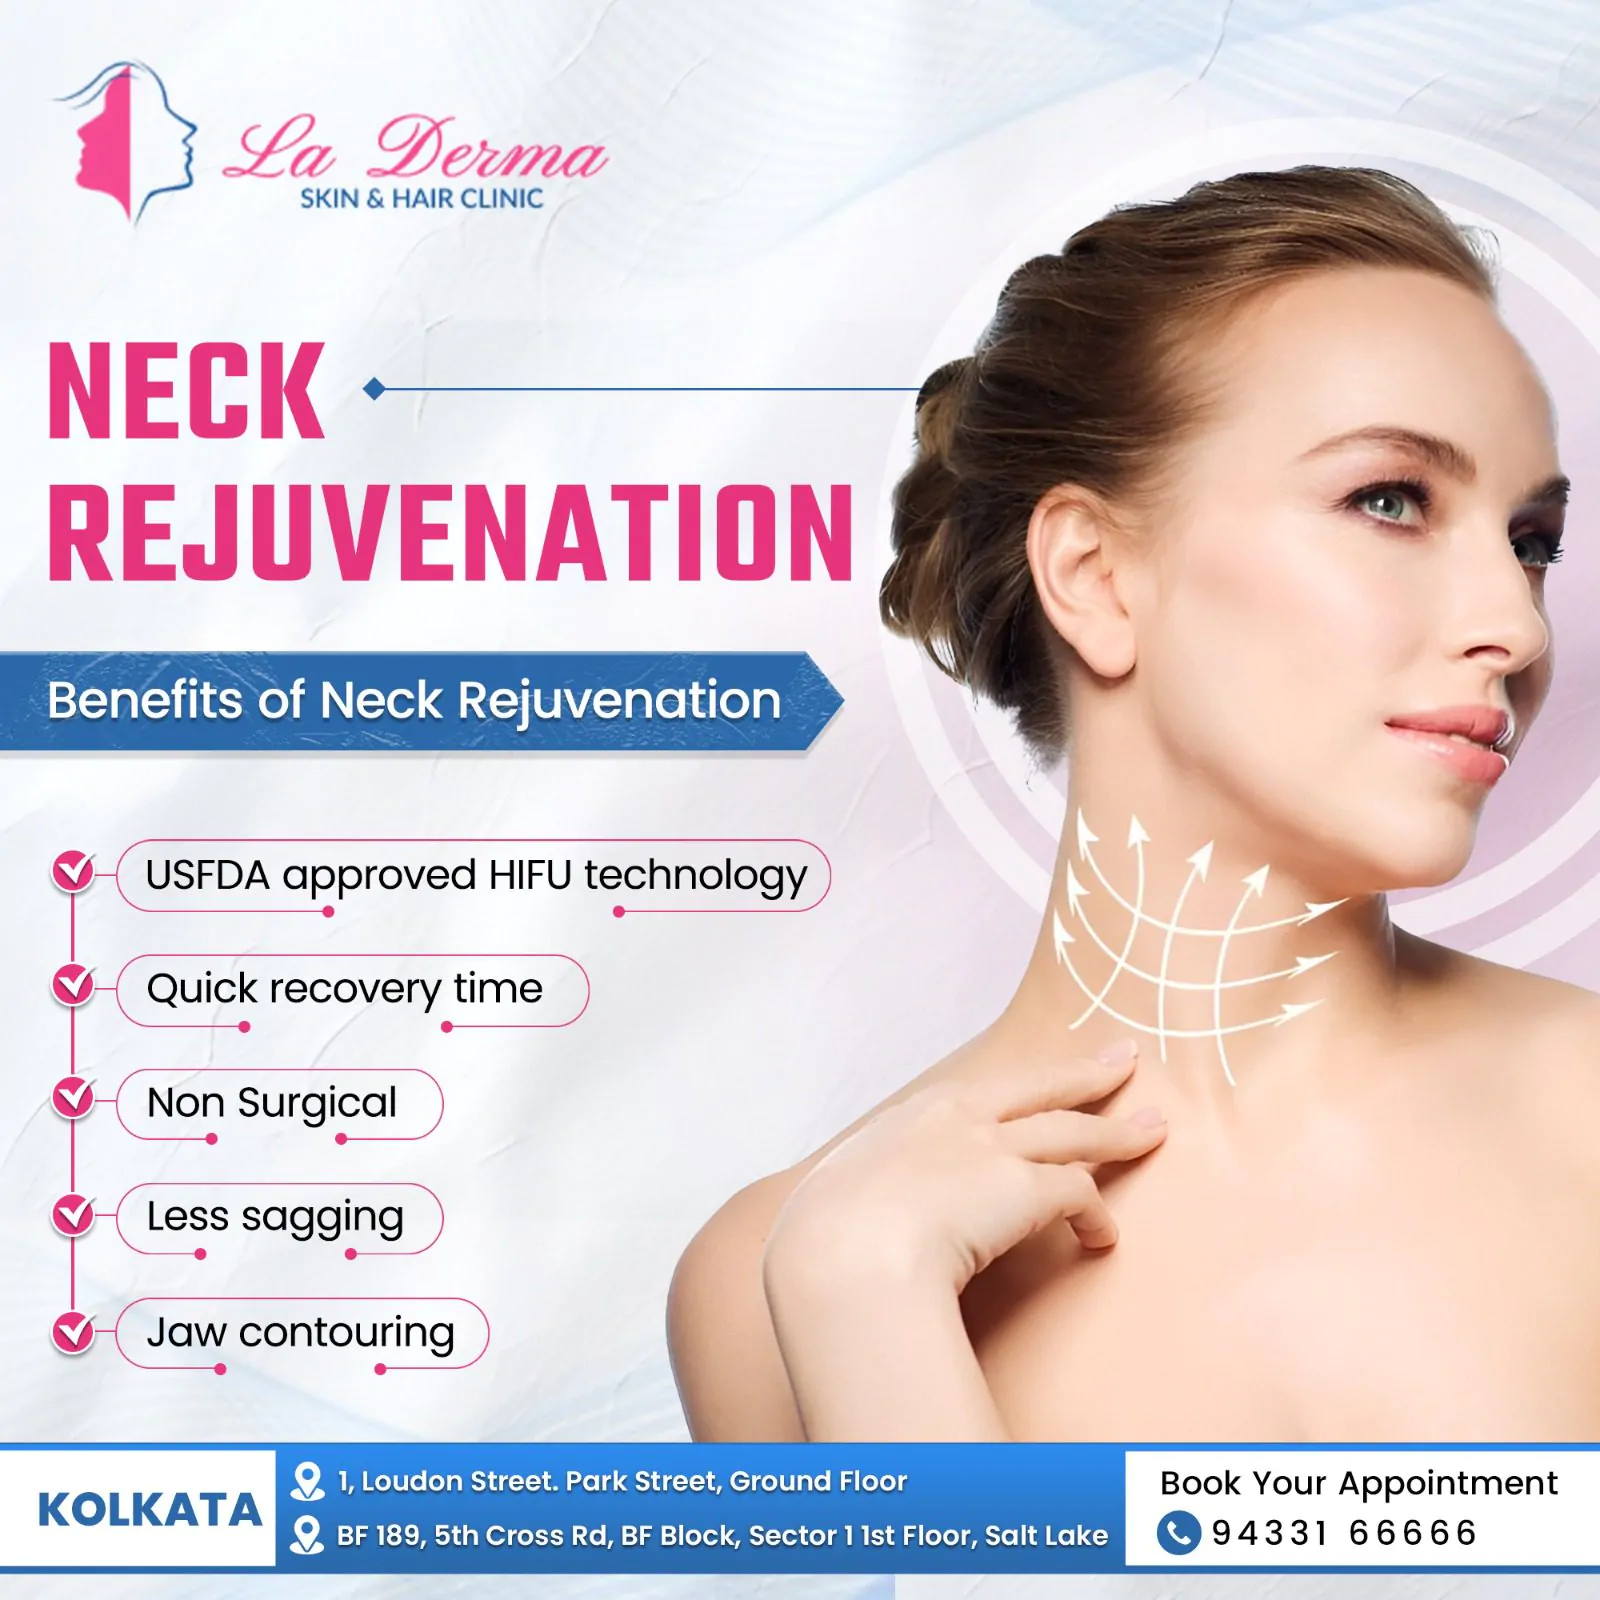 Benefits of Neck Rejuvenation!